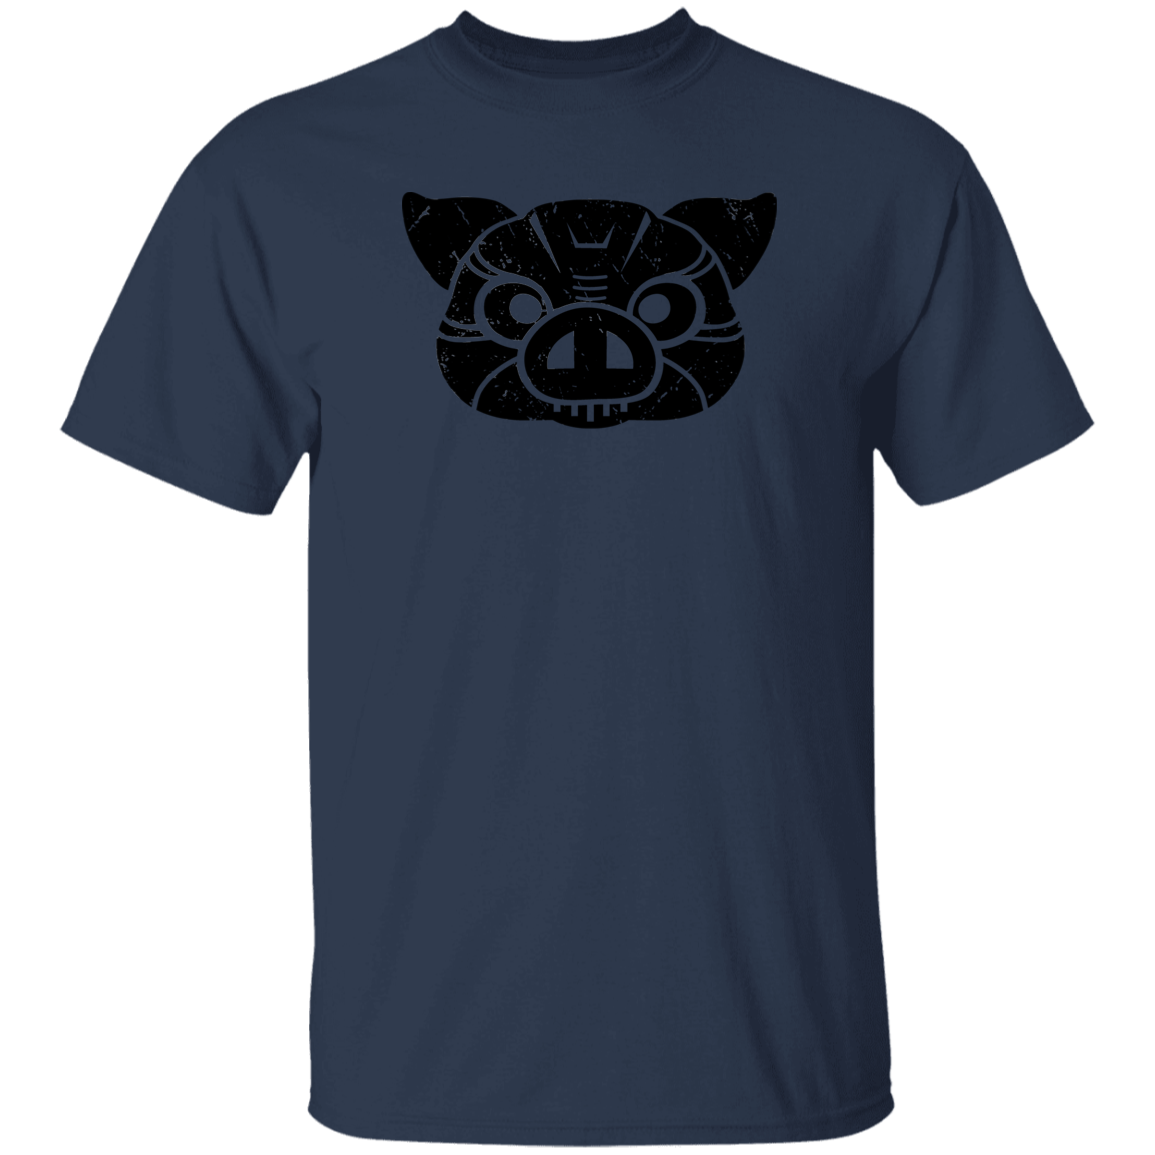 Black Distressed Emblem T-Shirt for Kids (Pig/Hoss)